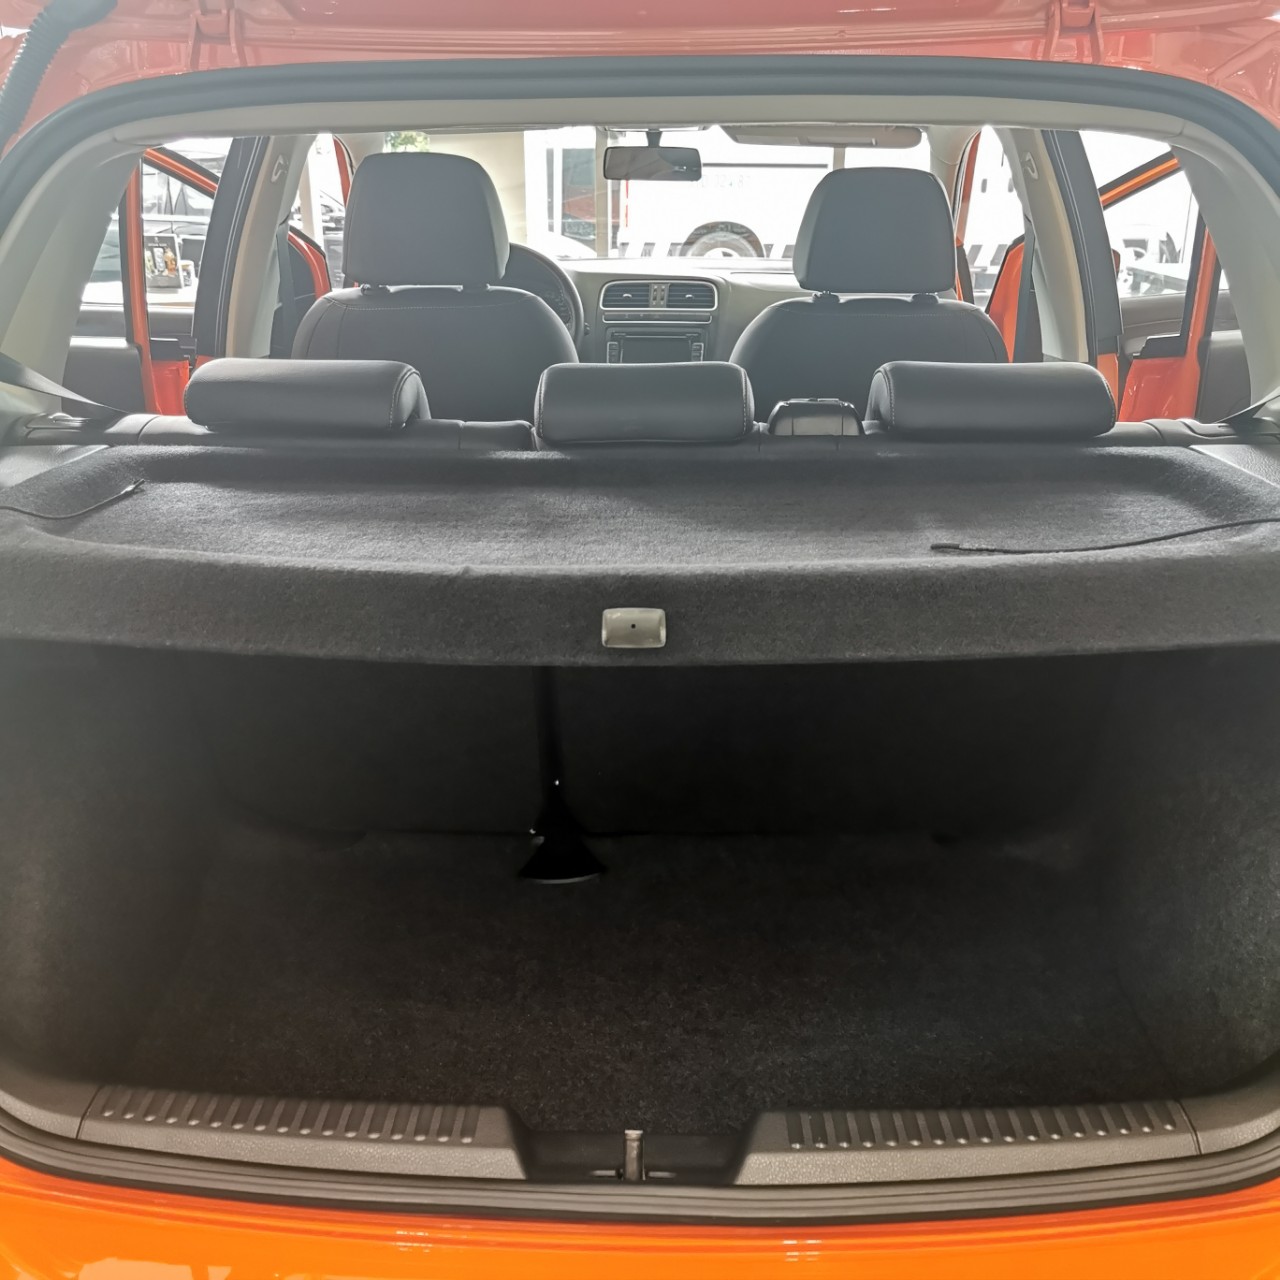 Bán Volkswagen Polo Hatchback chỉ 230tr nhận xe ngay - ưu đãi tốt nhất. LH: 093 2168 093-4